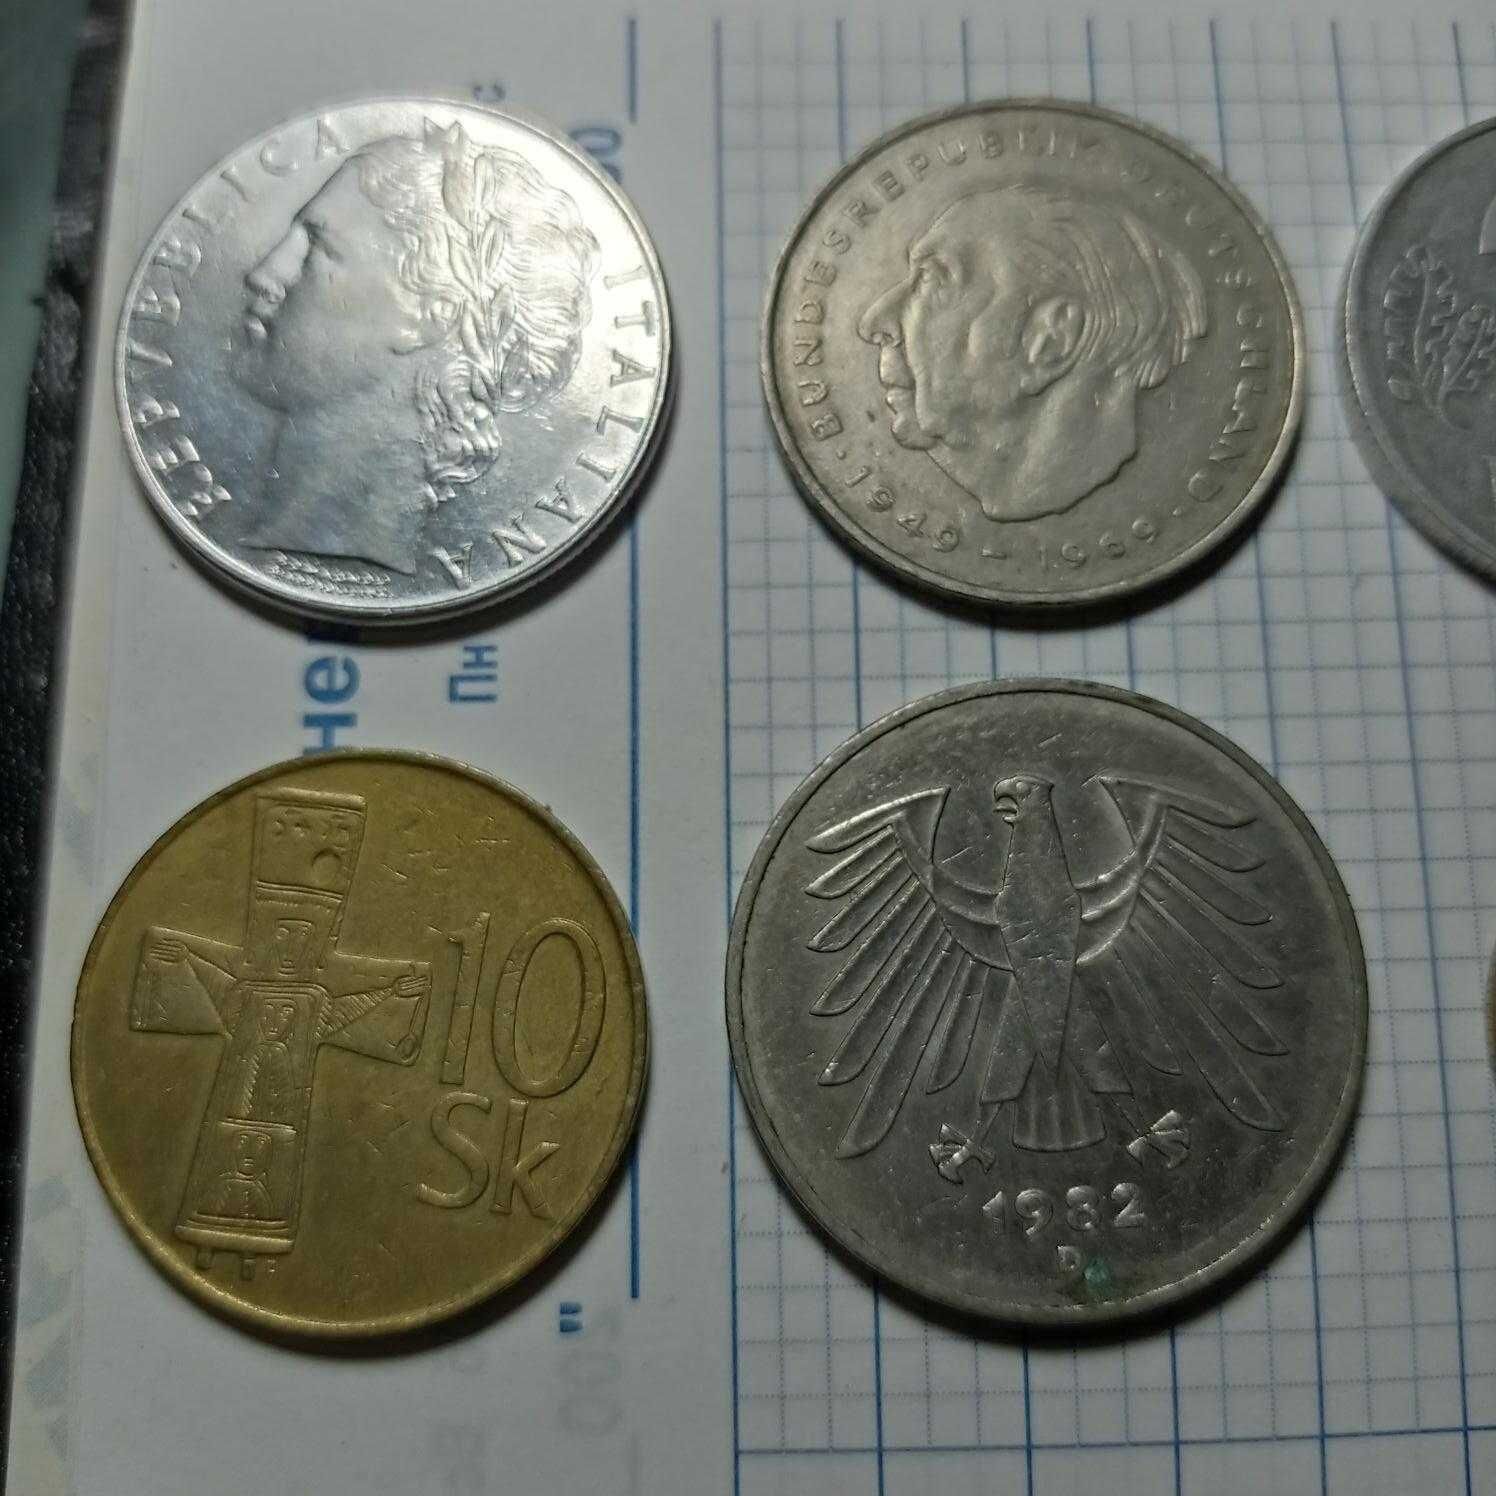 Монеты: Италия, Словения, Германия, Израиль, СССР 13 шт.